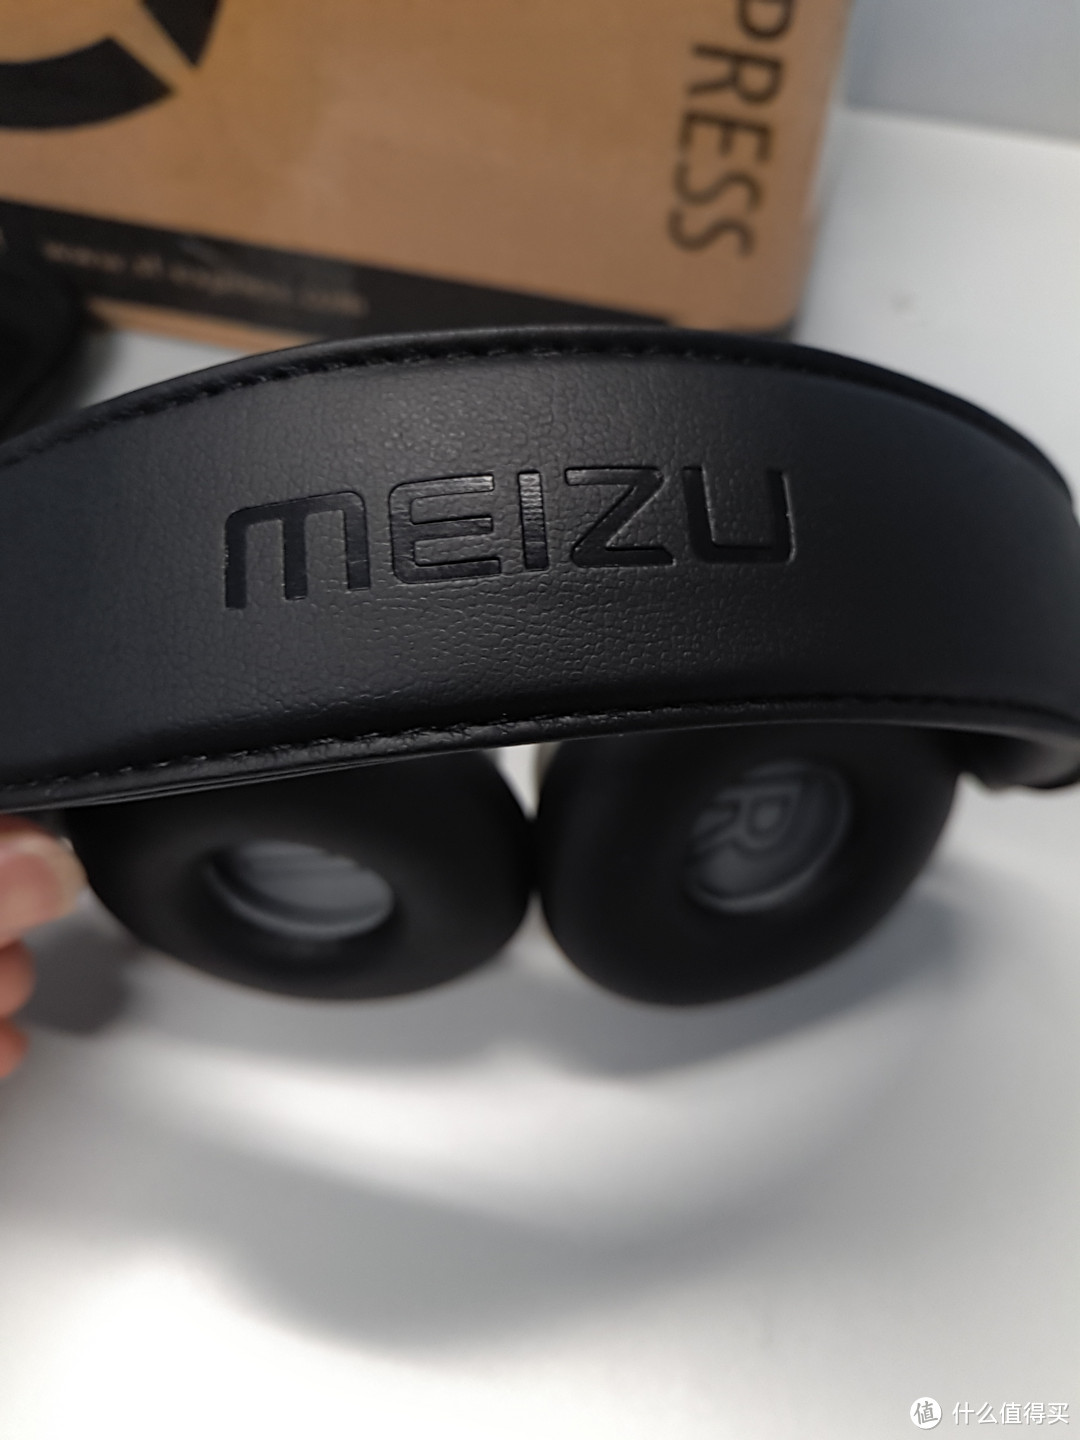 再一次信仰充值：老魅友的MEIZU 魅族 HD50 头戴式耳机 开箱简评